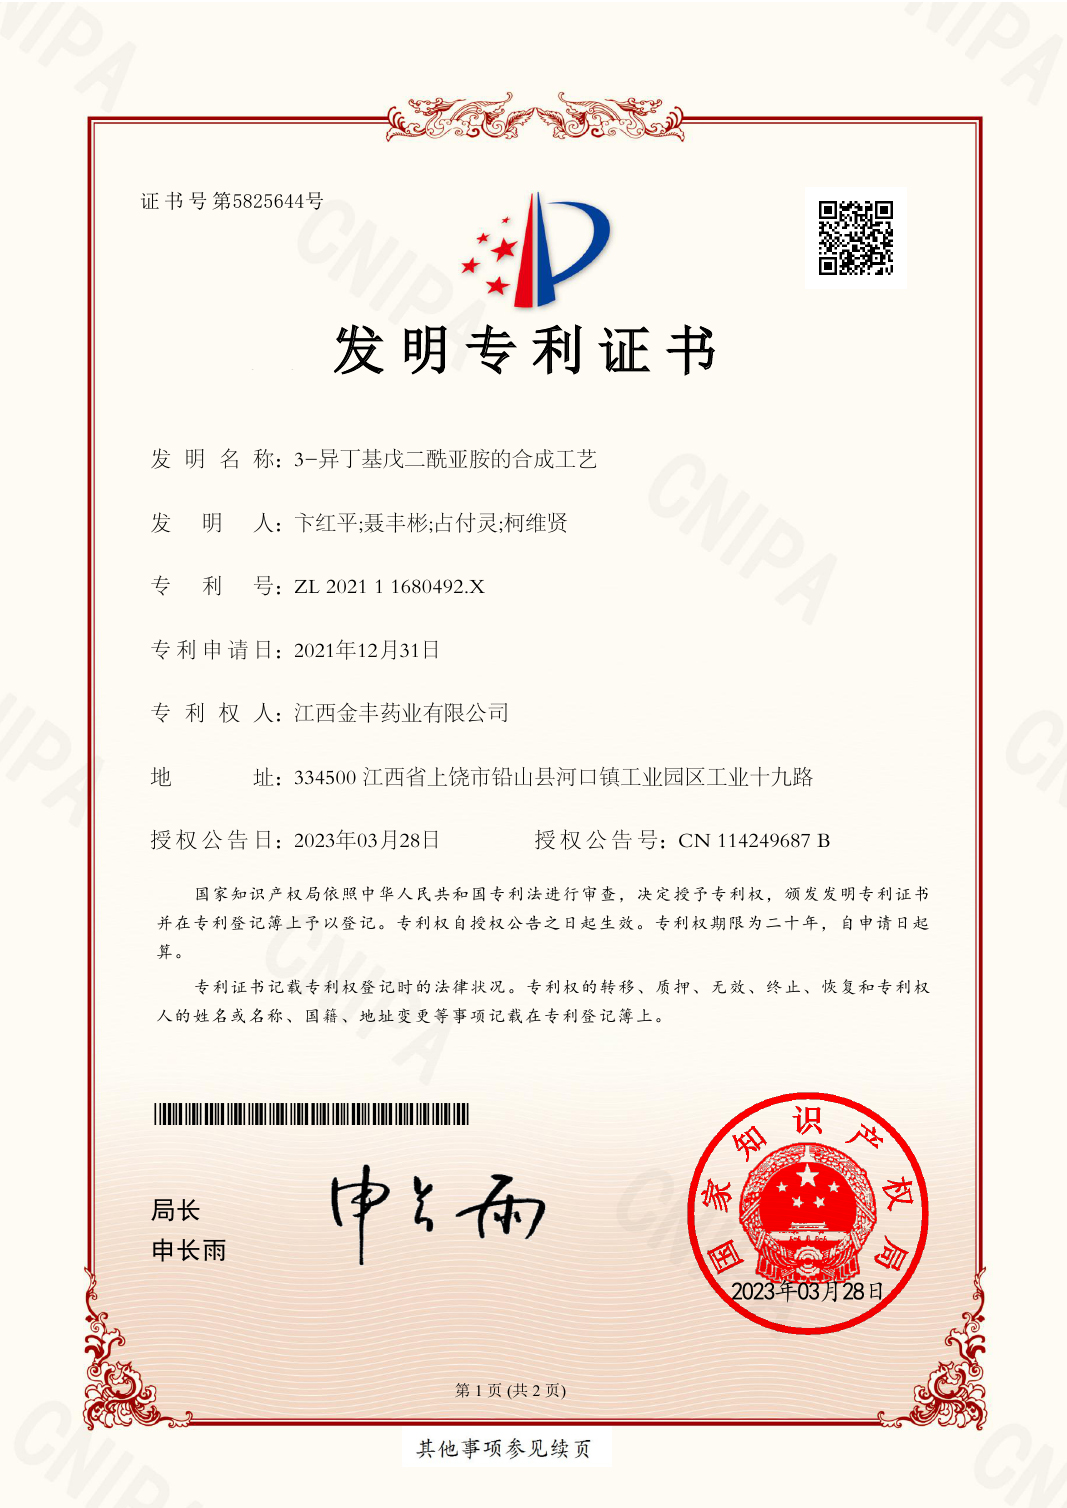 2021109507045 Invention Patent Certificate EZ04(signature)